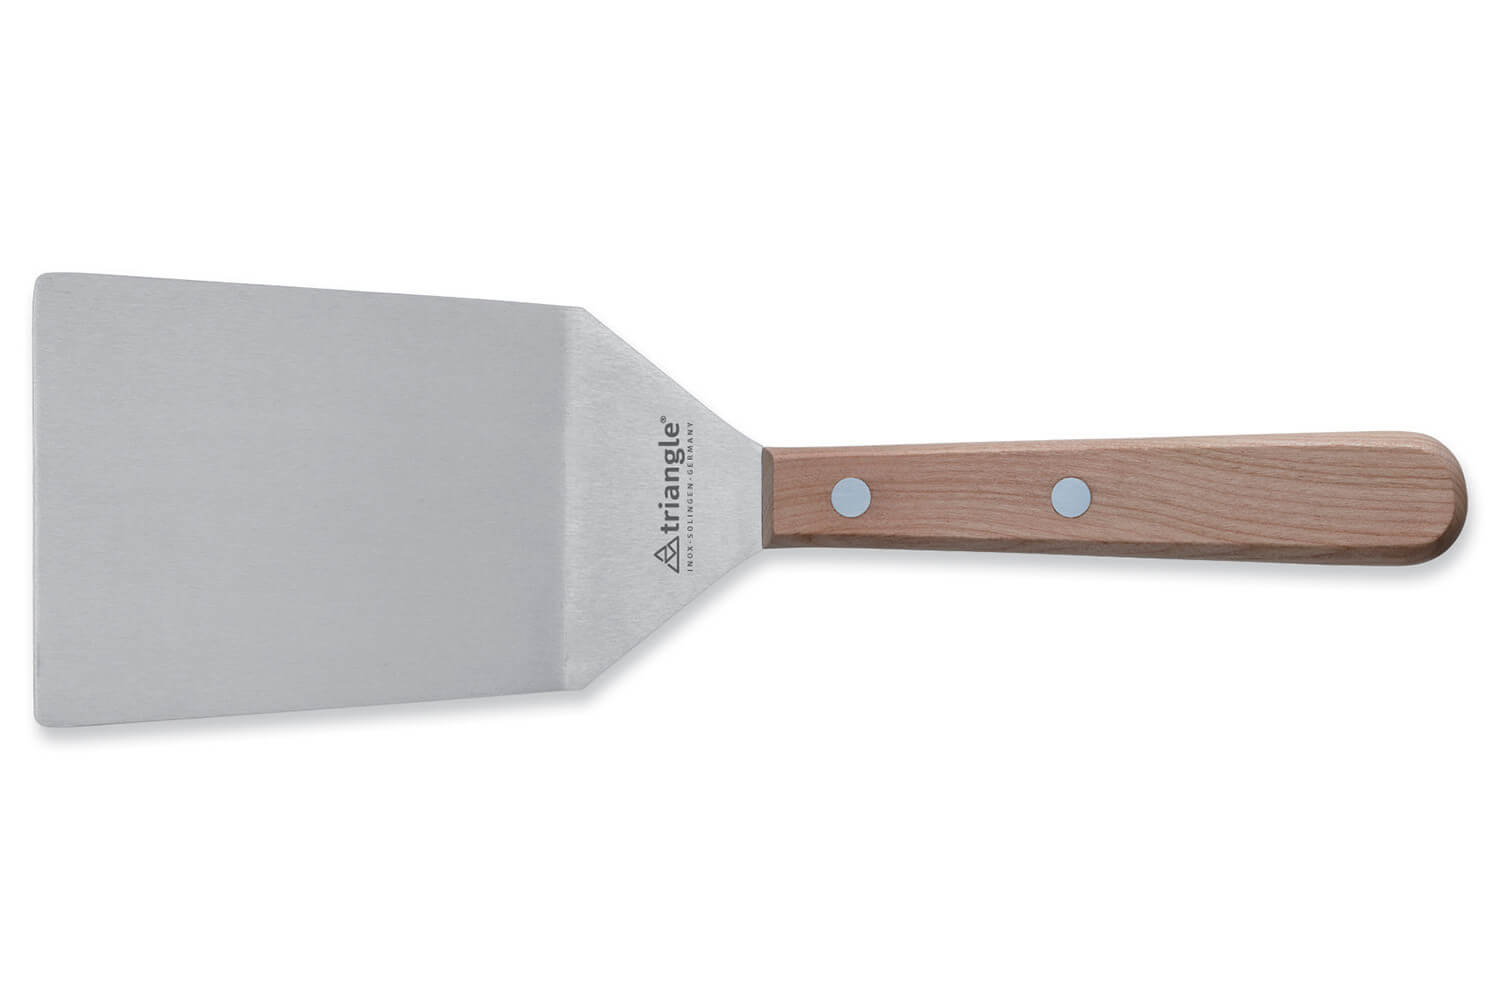 Grande spatule lame flexible coudée bout rond - Spatules : Buffet Plus